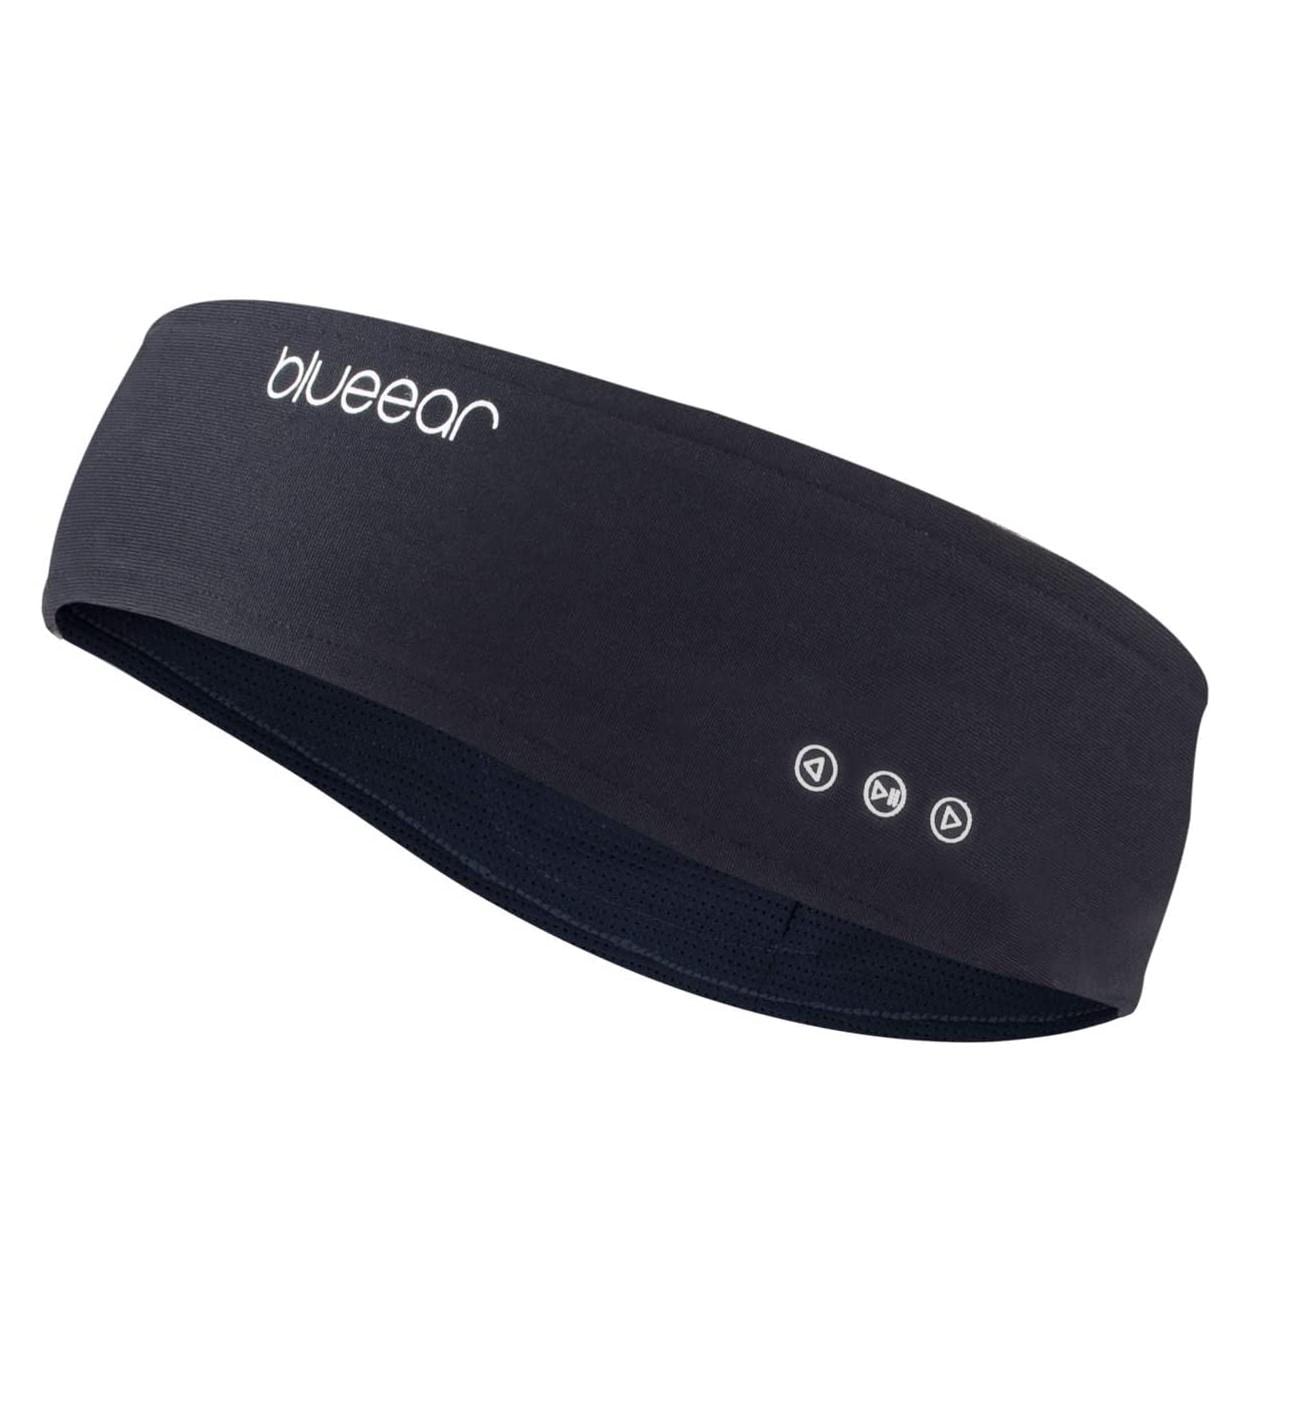 Pannband med Bluetooth hörlurar och mikrofon - svart (1 av 3)